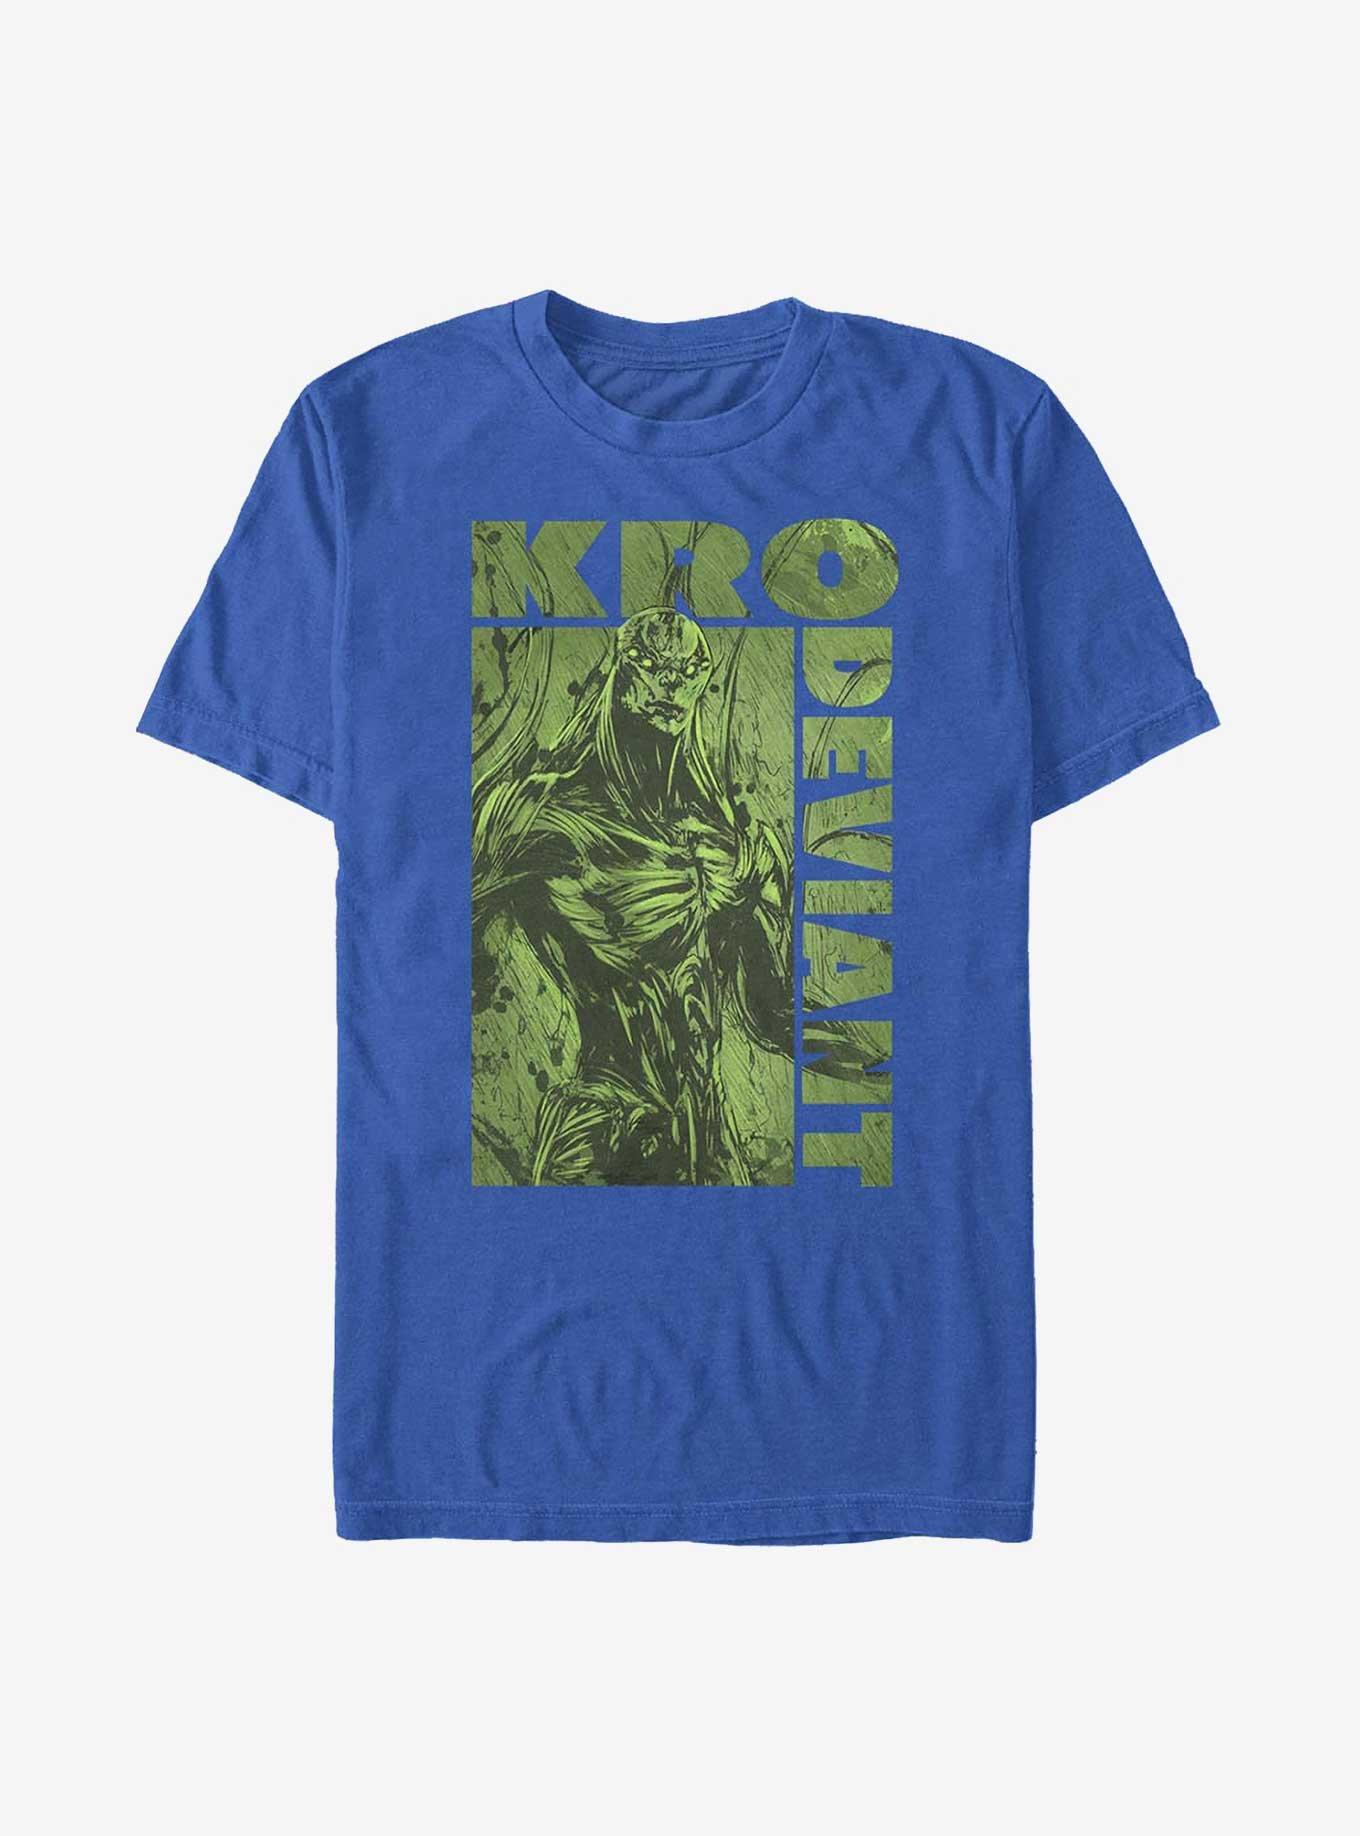 Marvel Eternals Deviant Kro T-Shirt, , hi-res